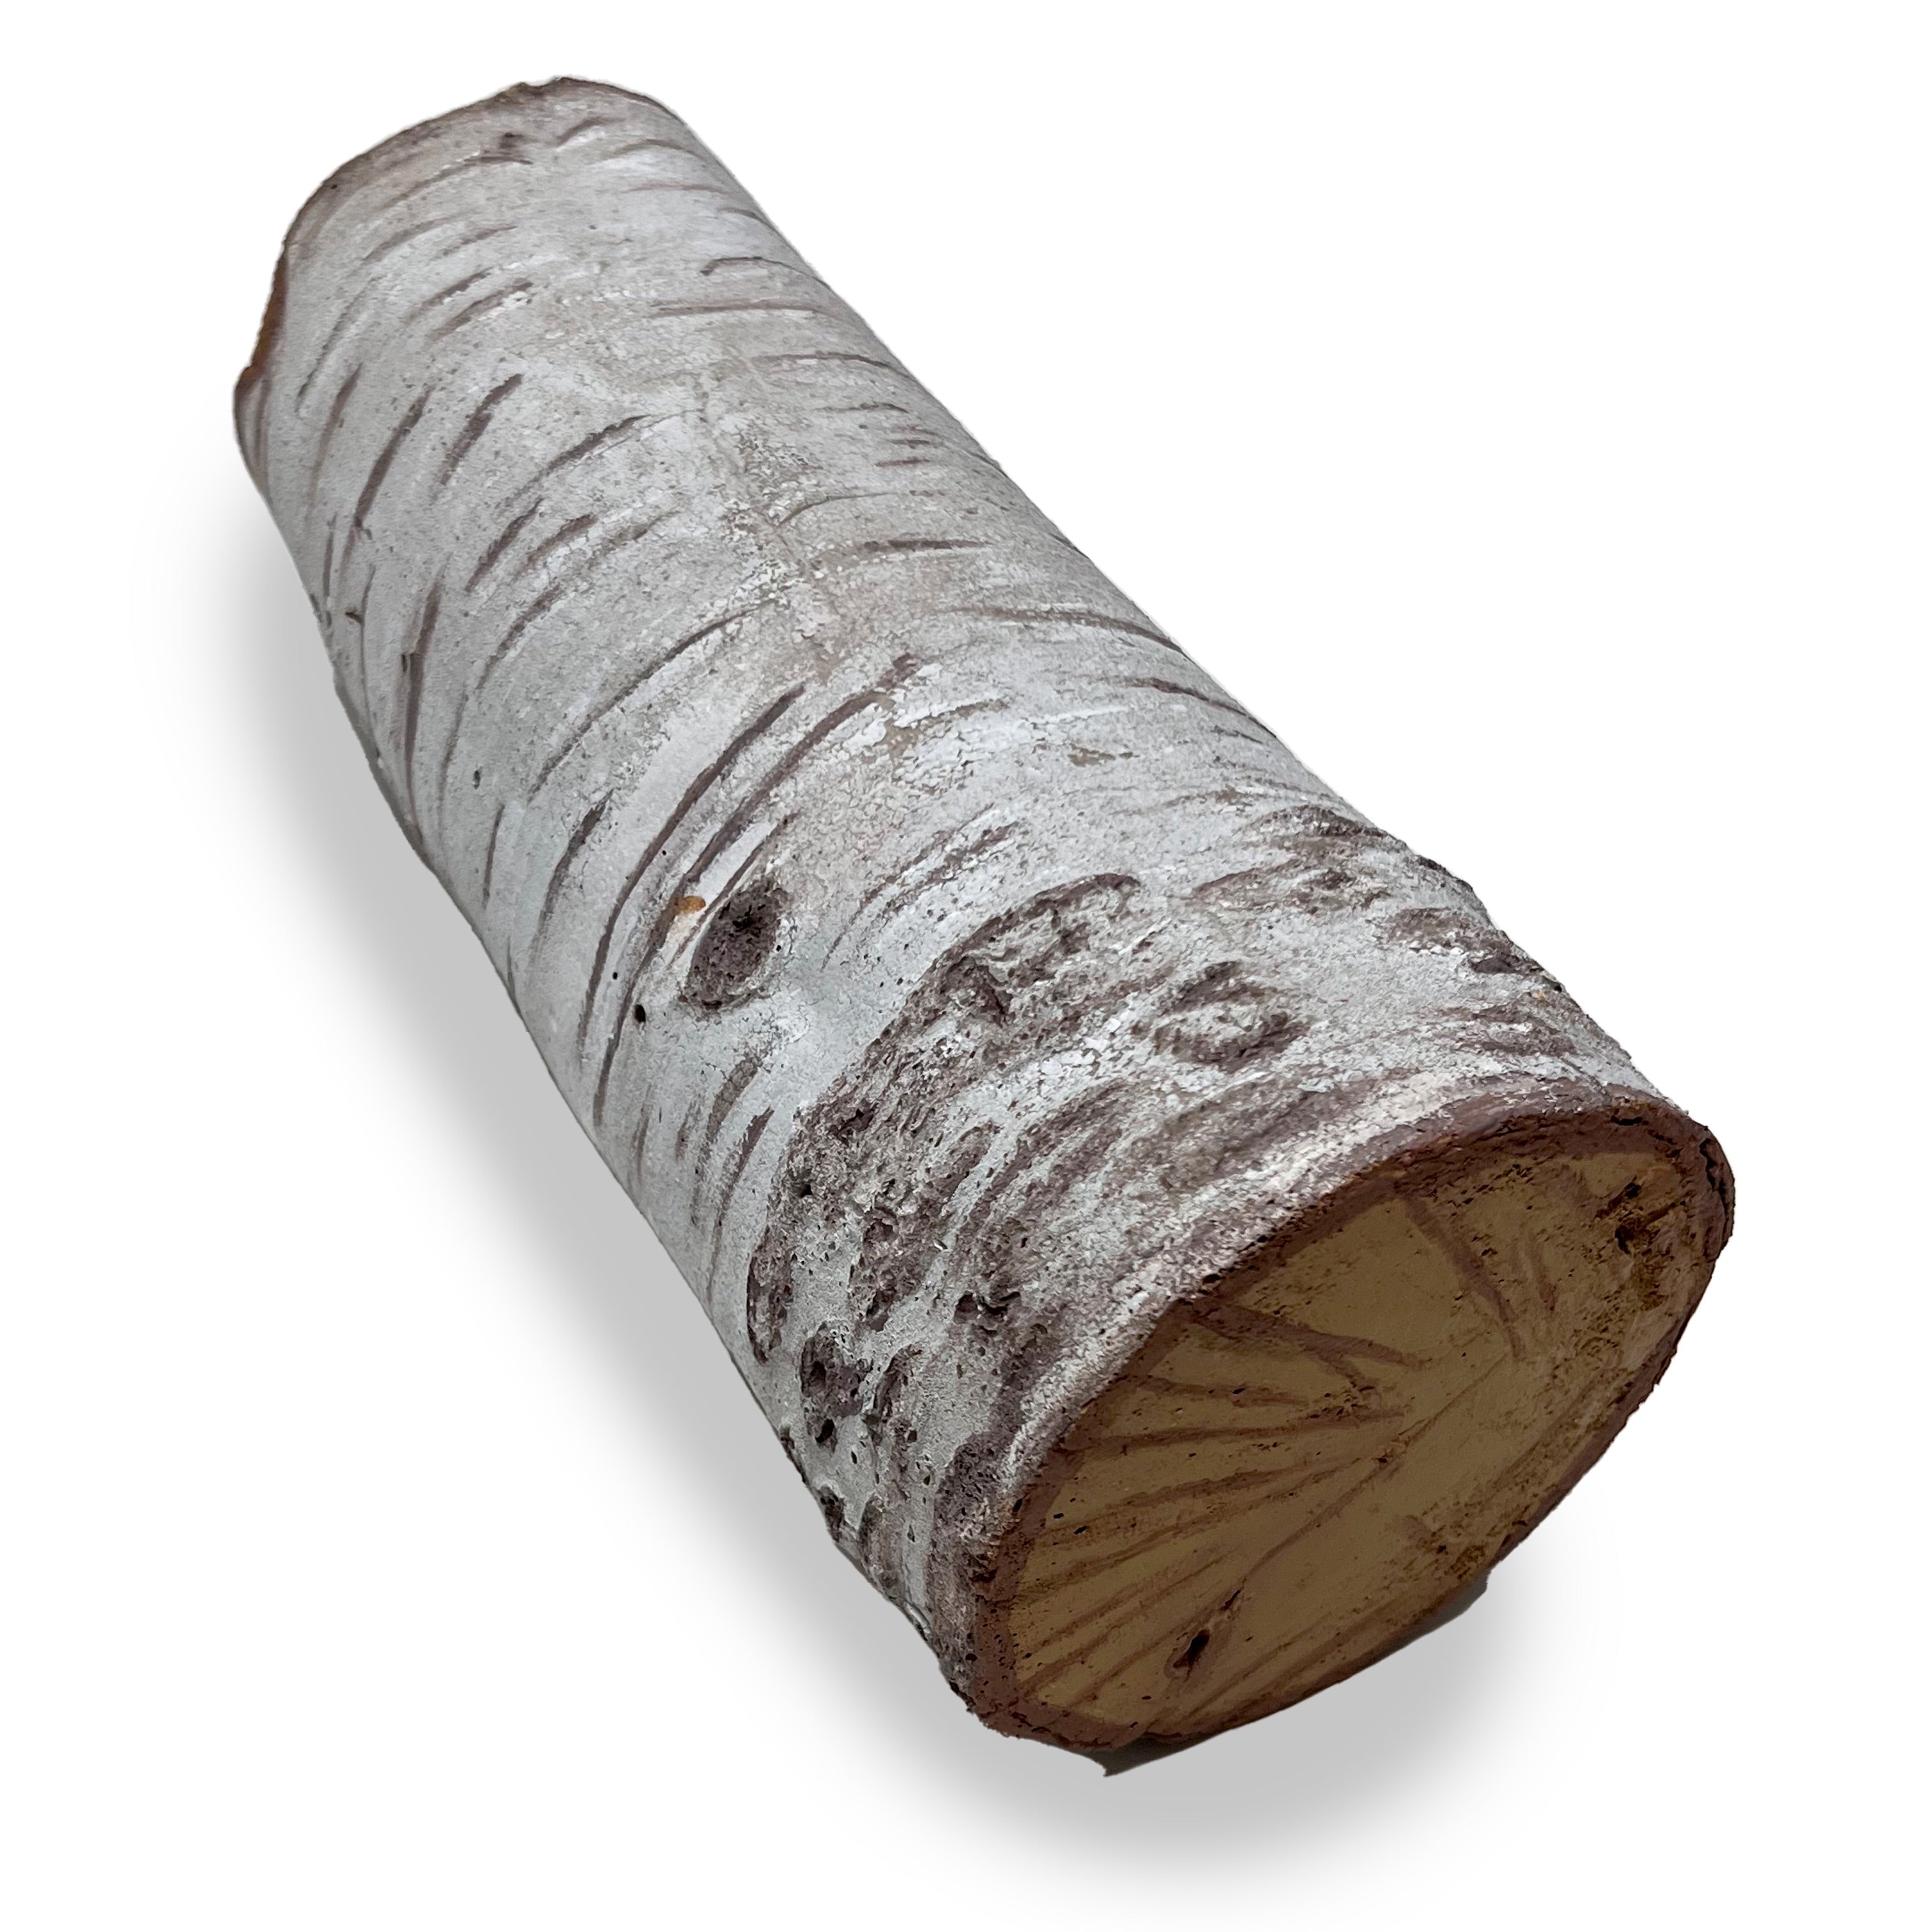 Foam Rubber Birch Log Prop - 12 Inches Long - Birch Finish